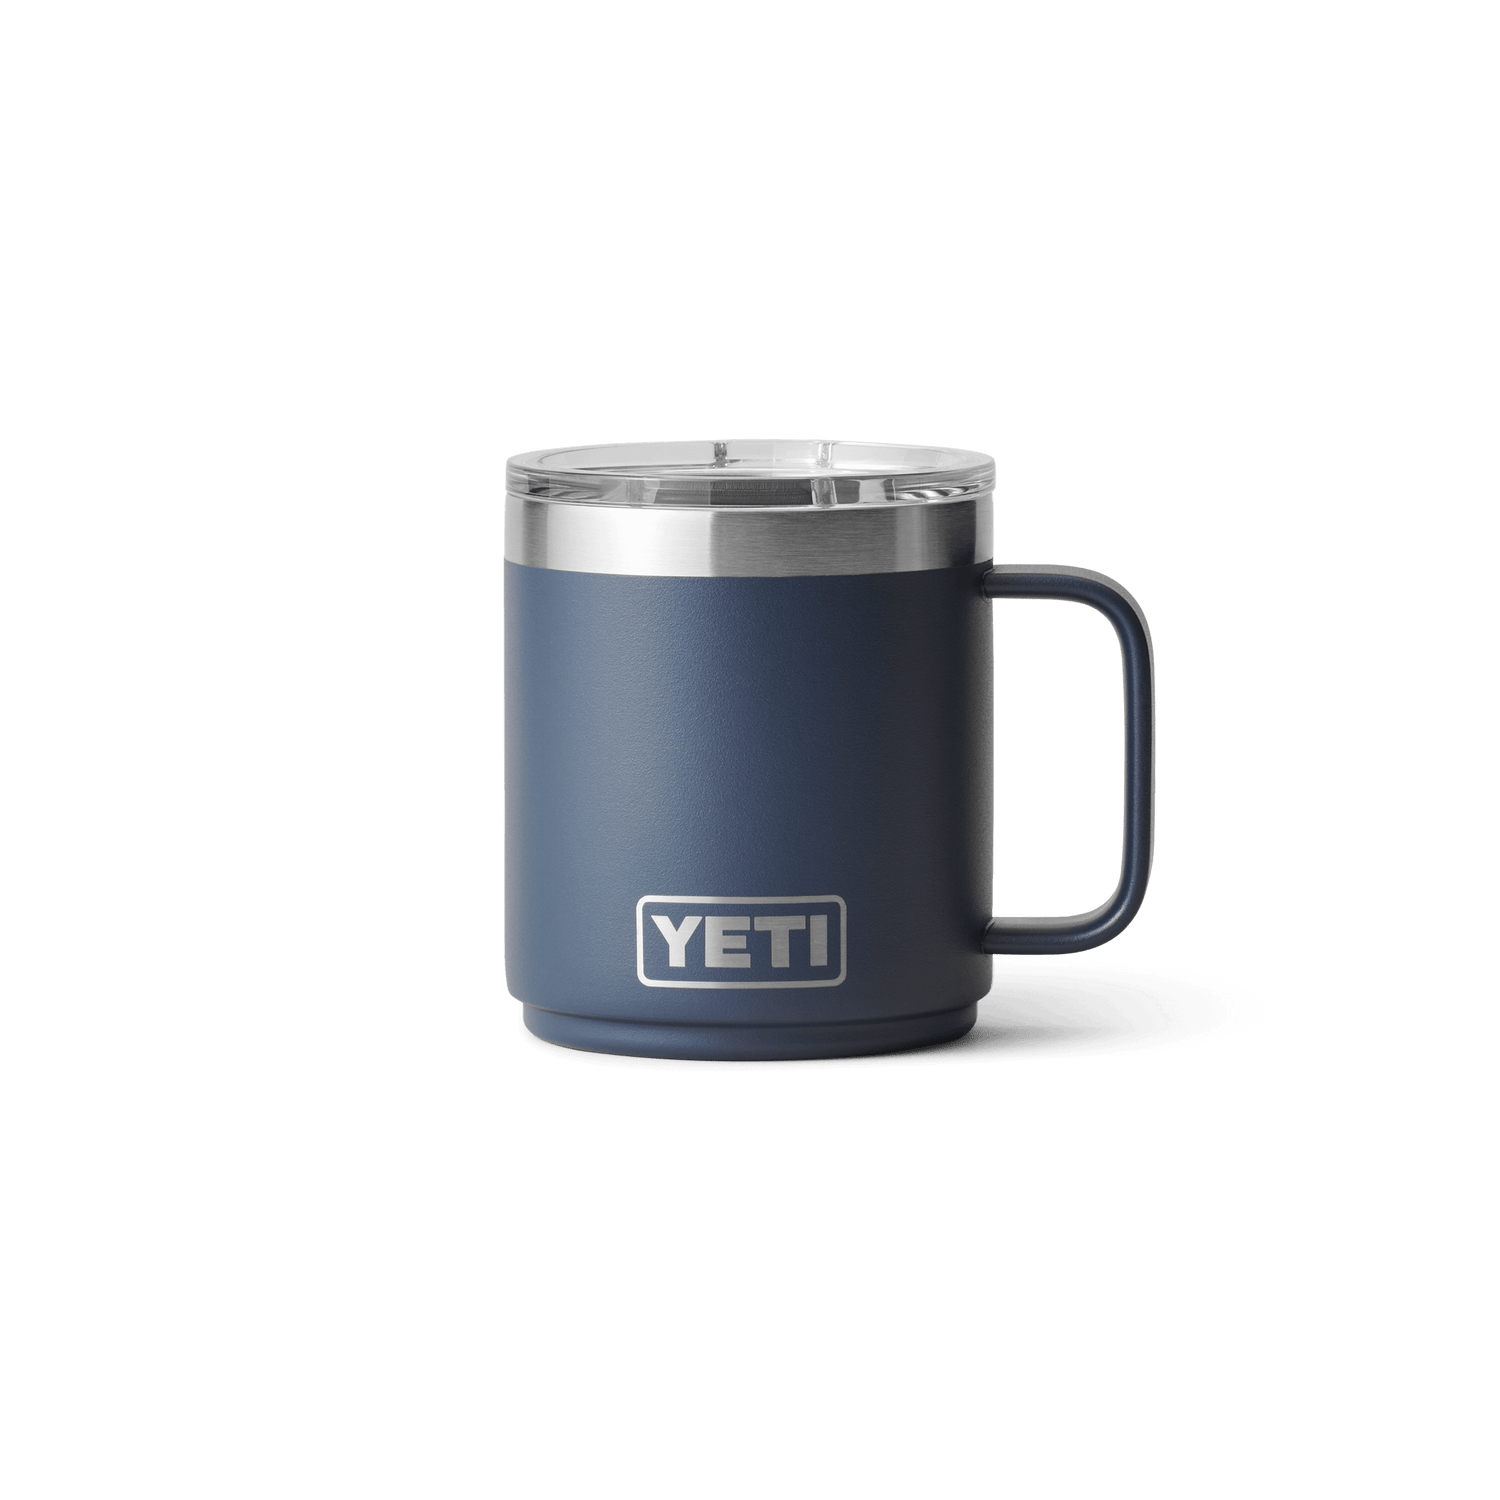 Yeti - Rambler 14 oz Mug - Navy